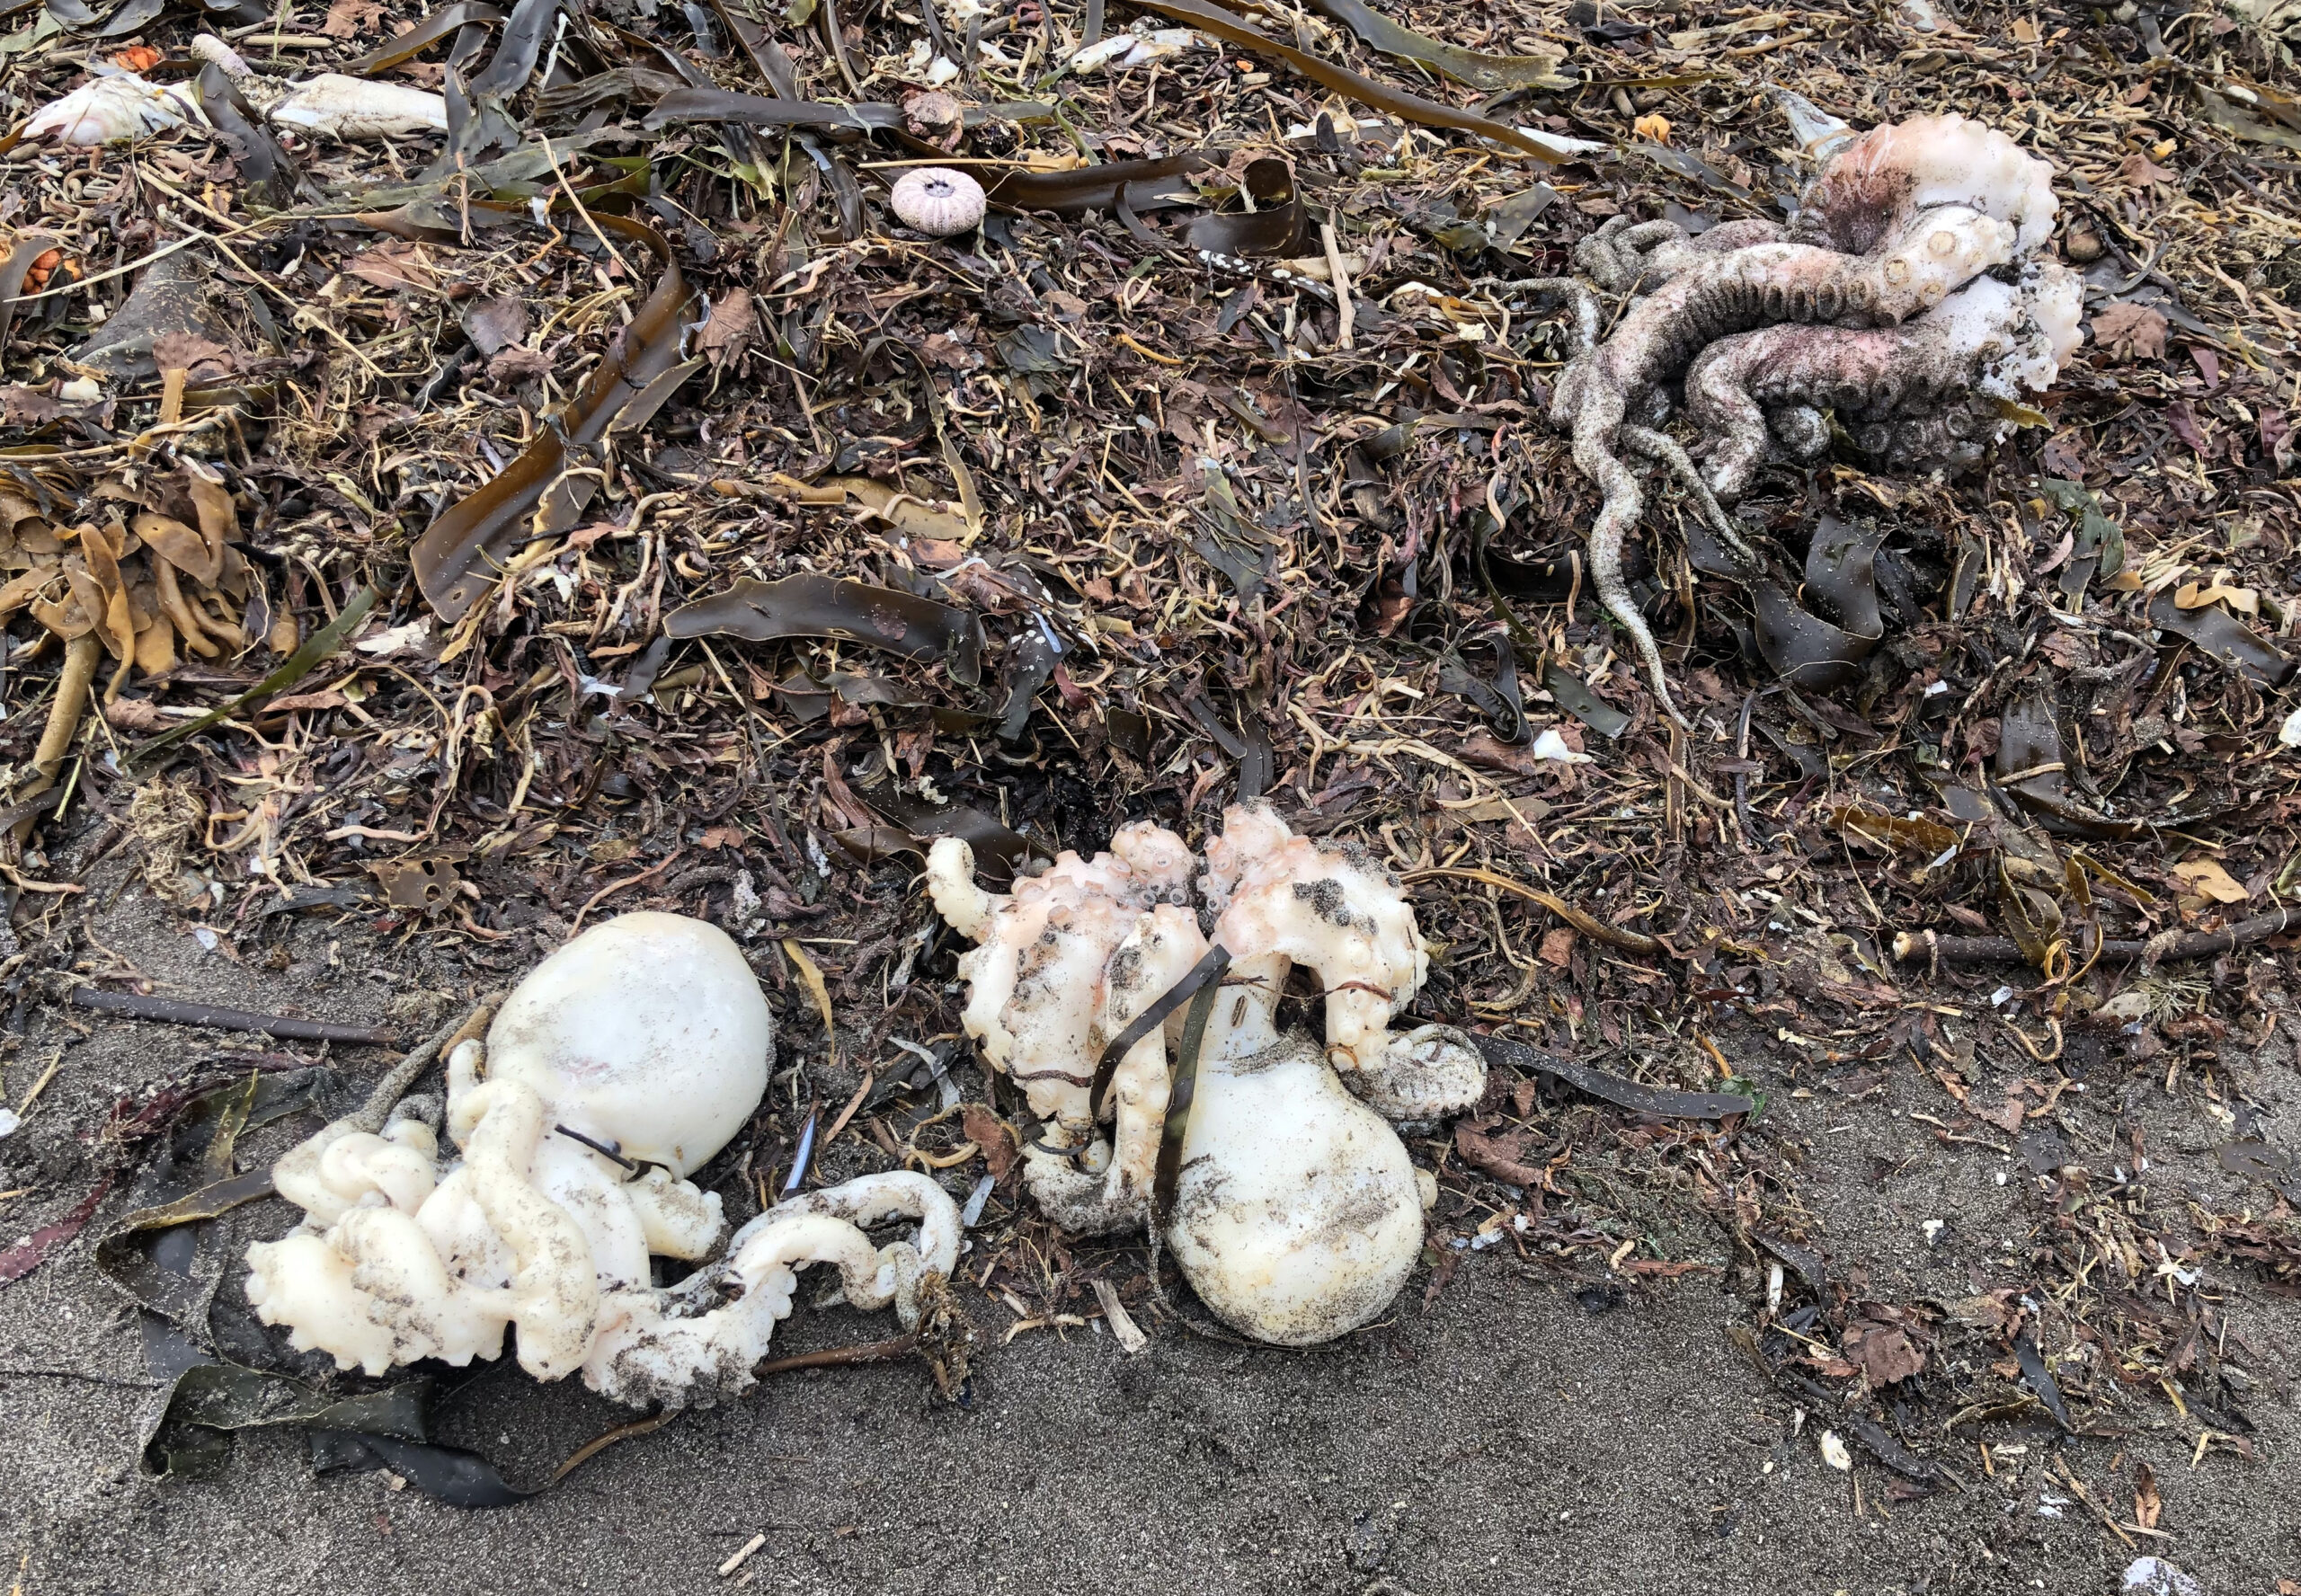 Погибшие осьминоги на одном из загрязненных пляжей Камчатки. Фото Ulyana Bakumenko/TASS/Scanpix/Leta